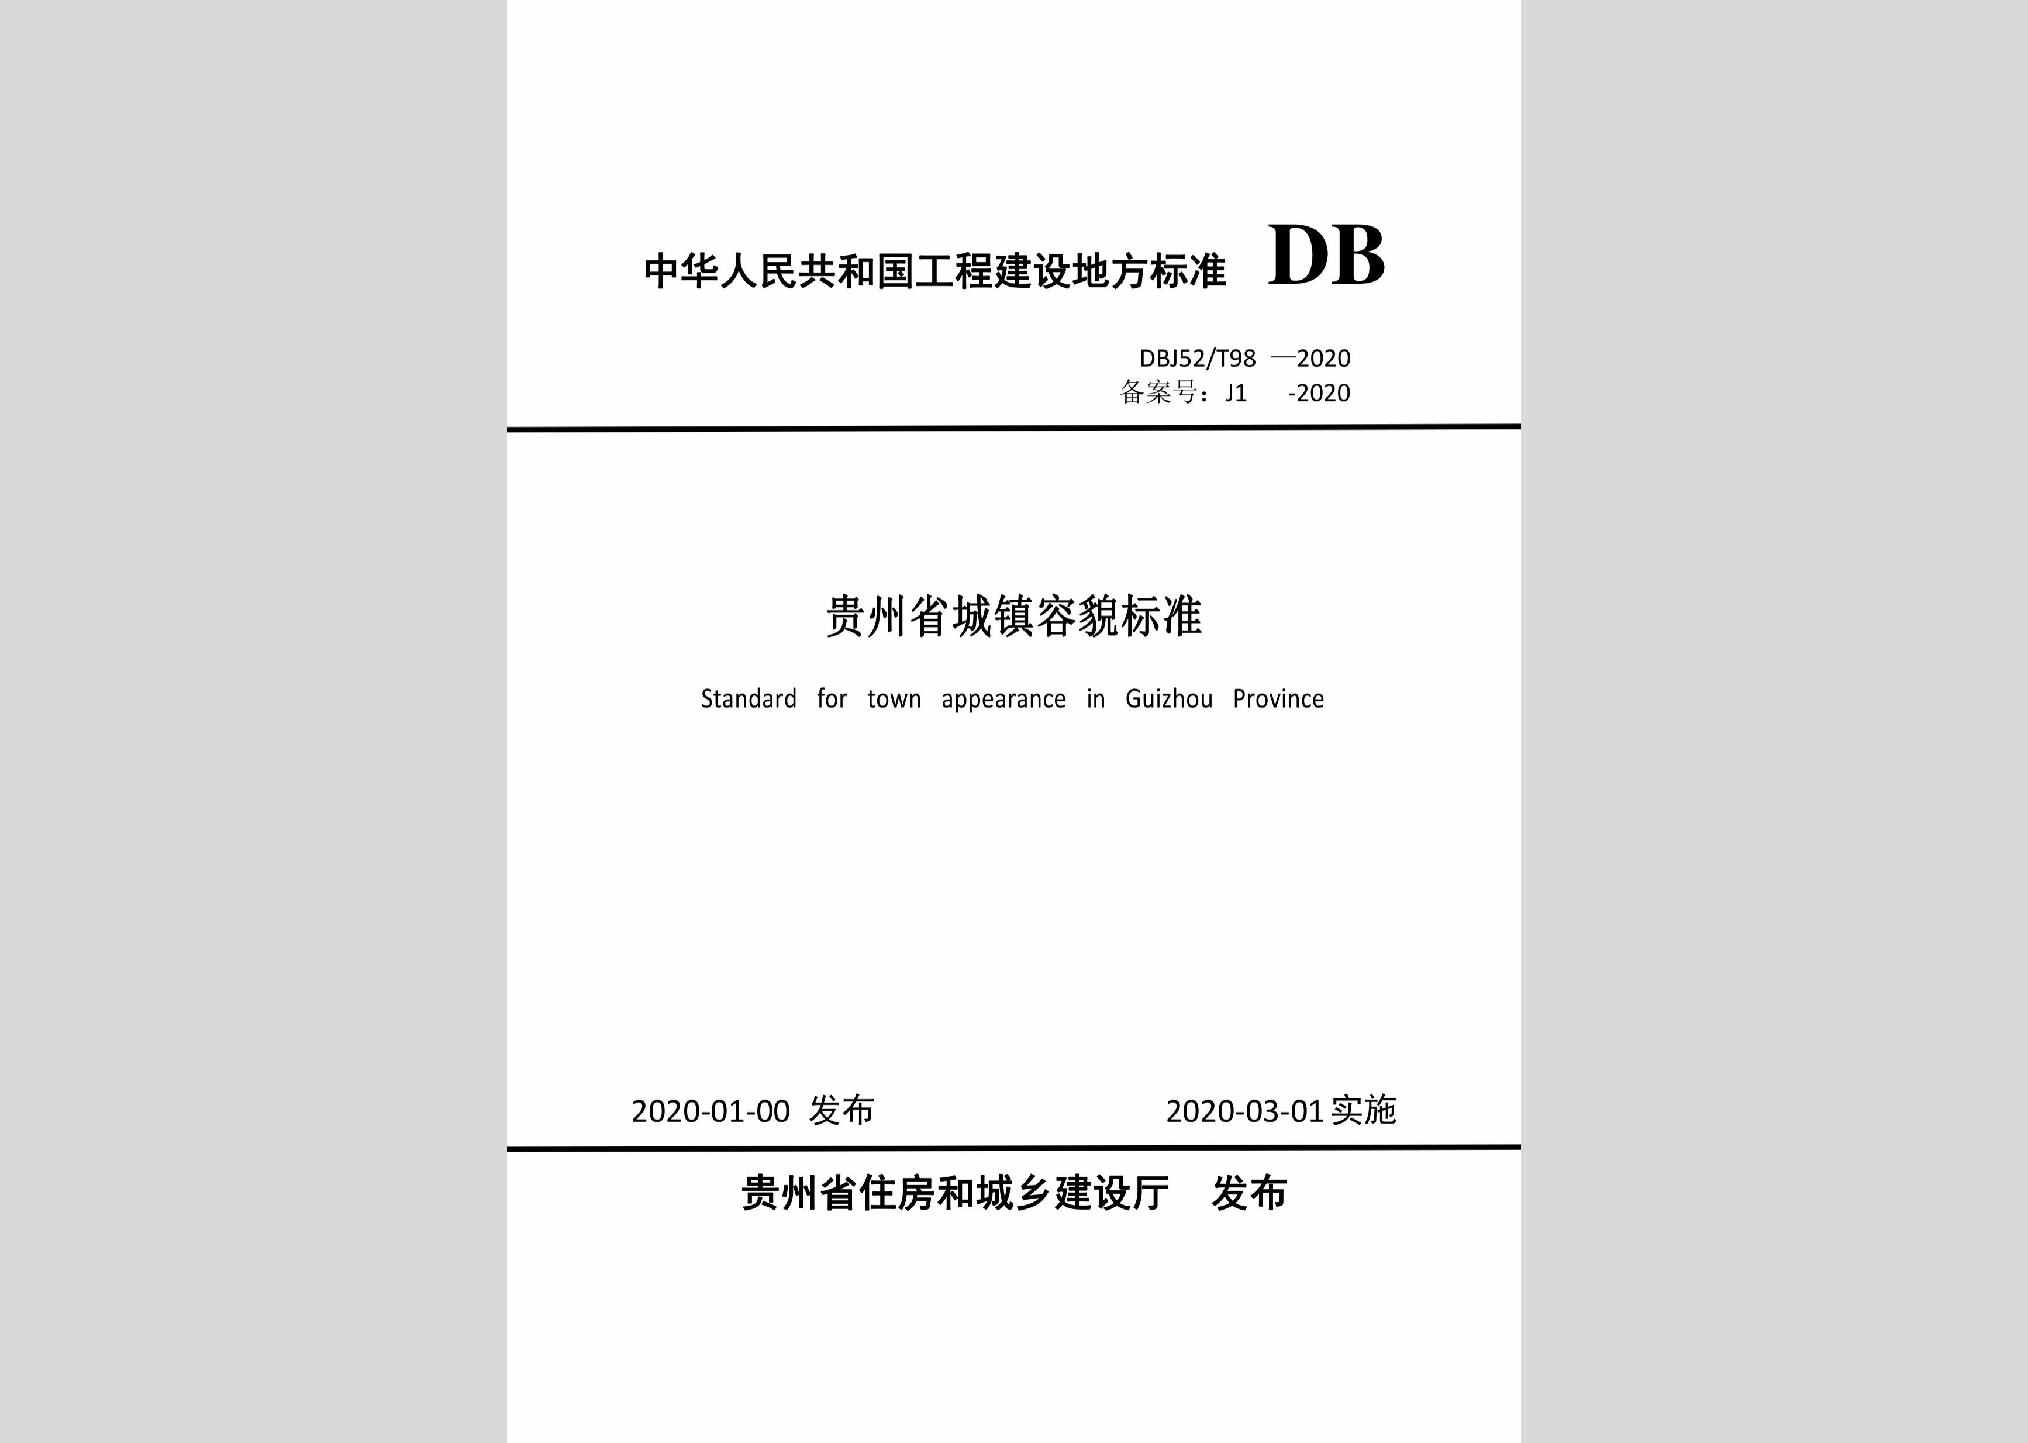 DBJ52/T98-2020：贵州省城镇容貌标准